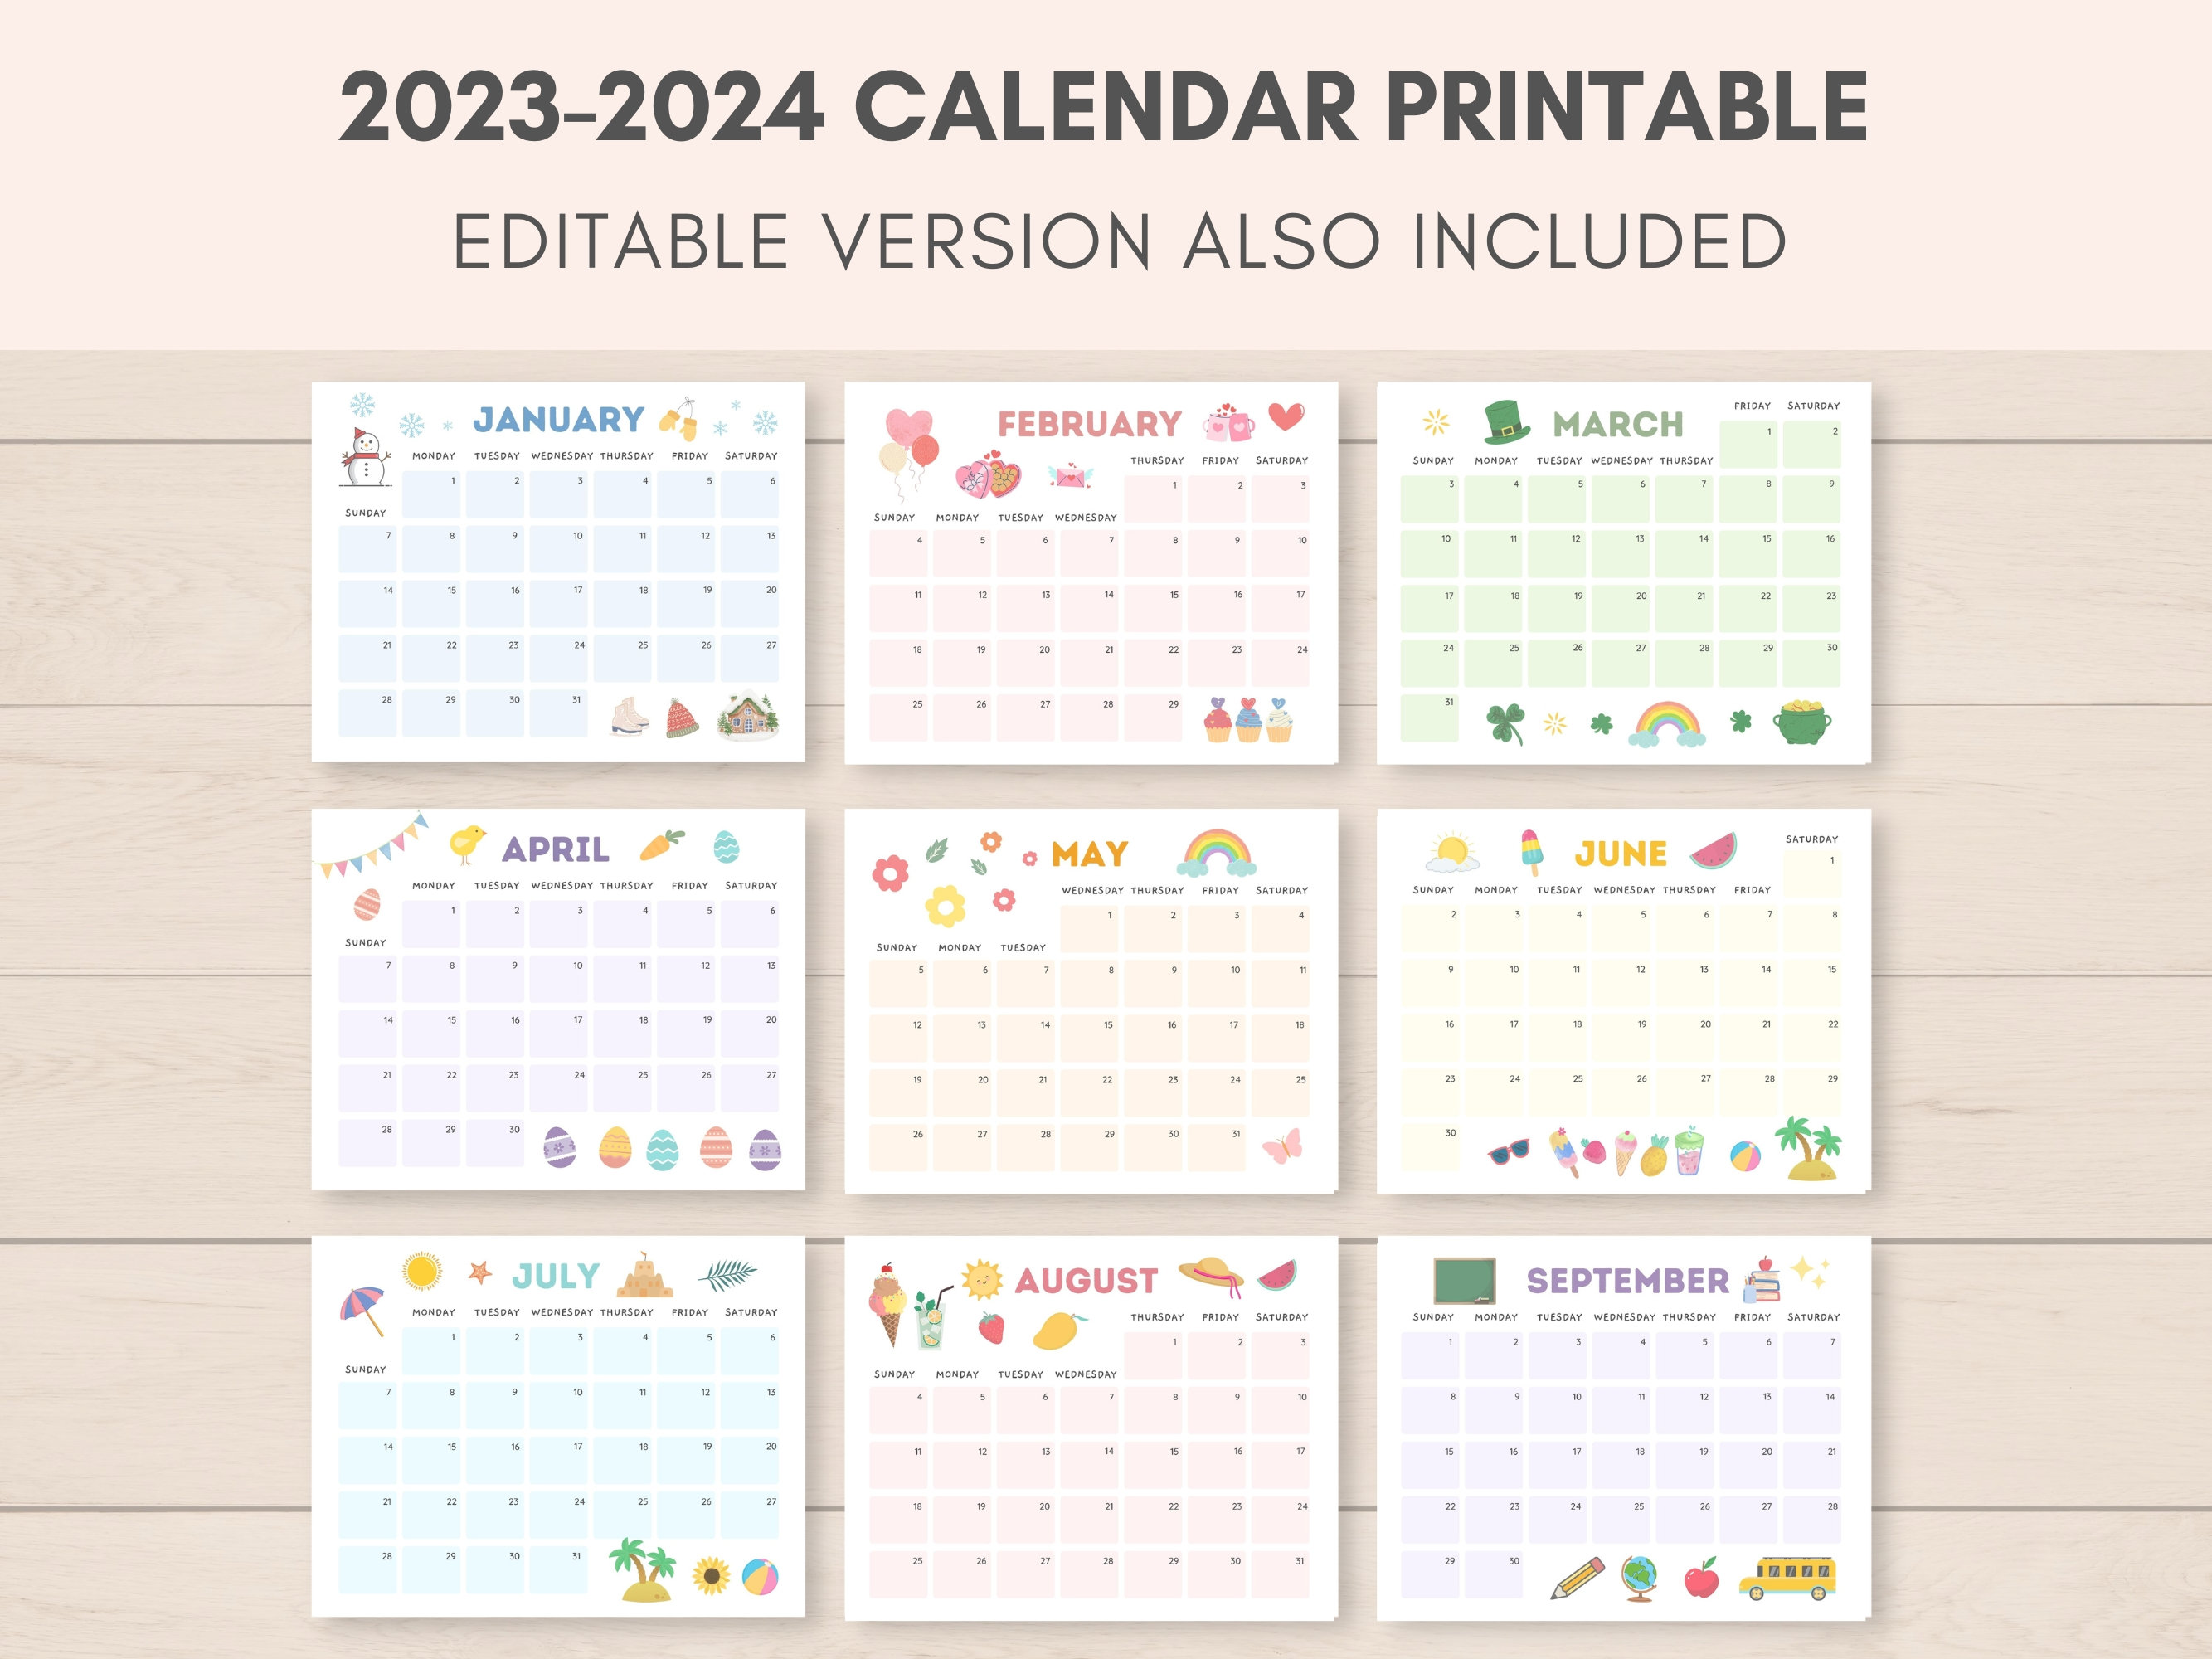 Calendrier 2023-2024 imprimable, calendrier imprimable, calendrier